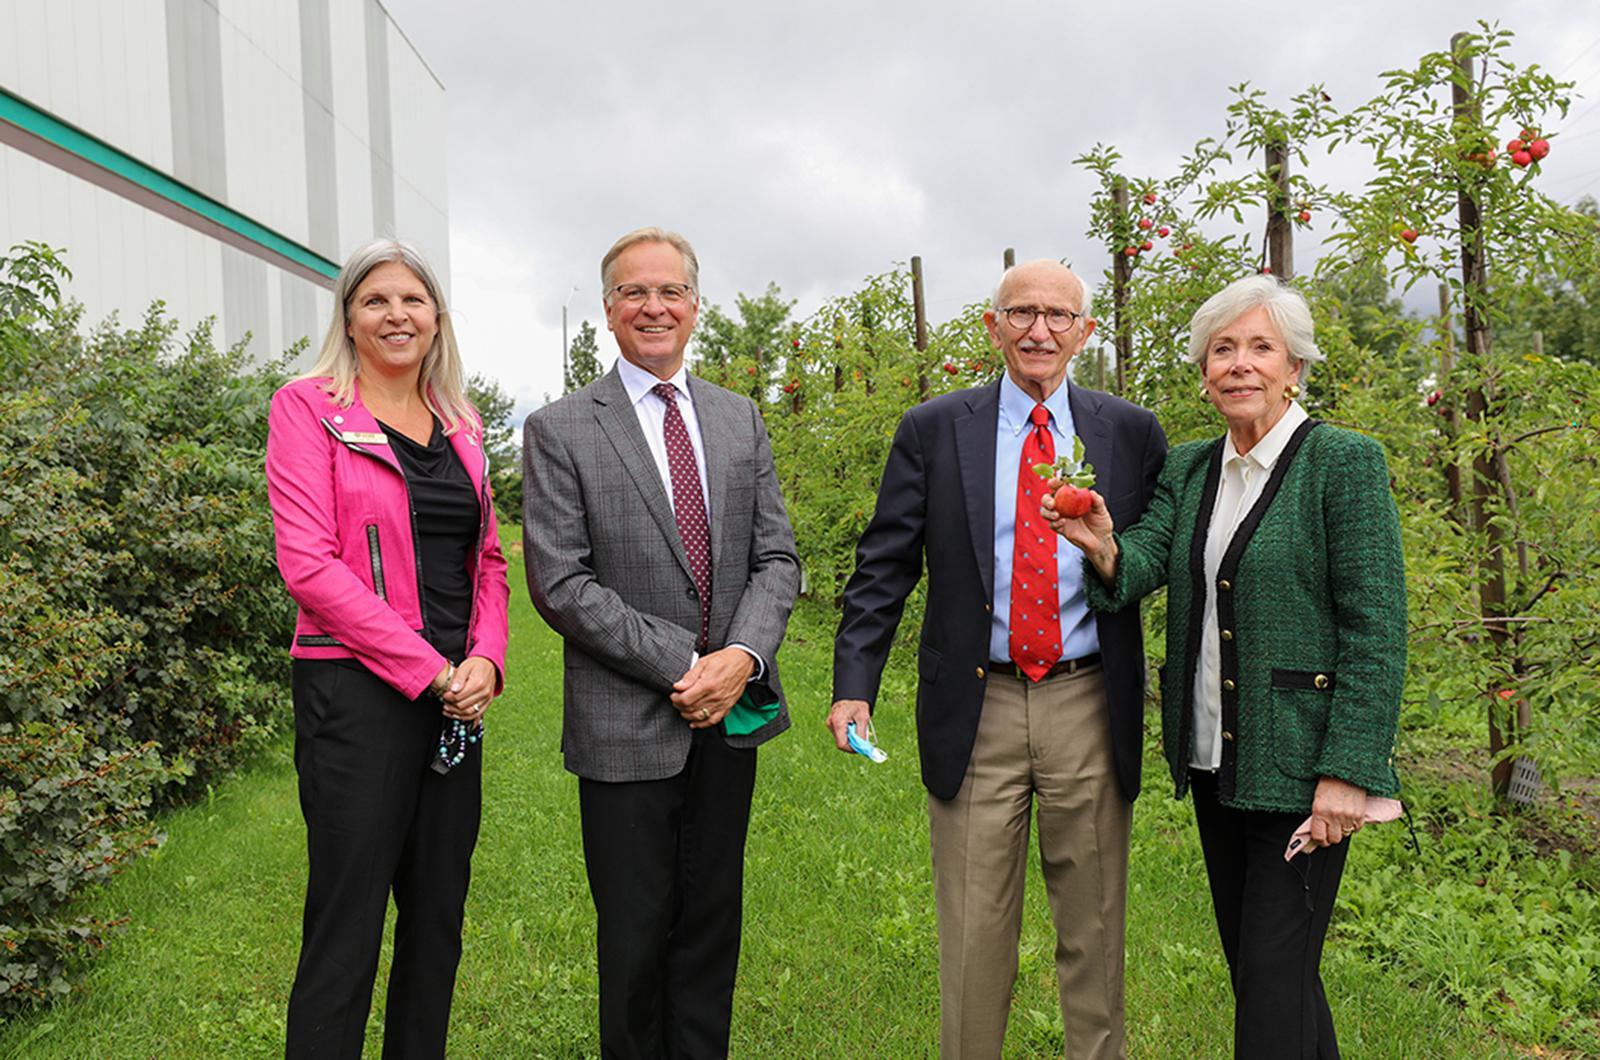 Durham College launches urban agriculture centre